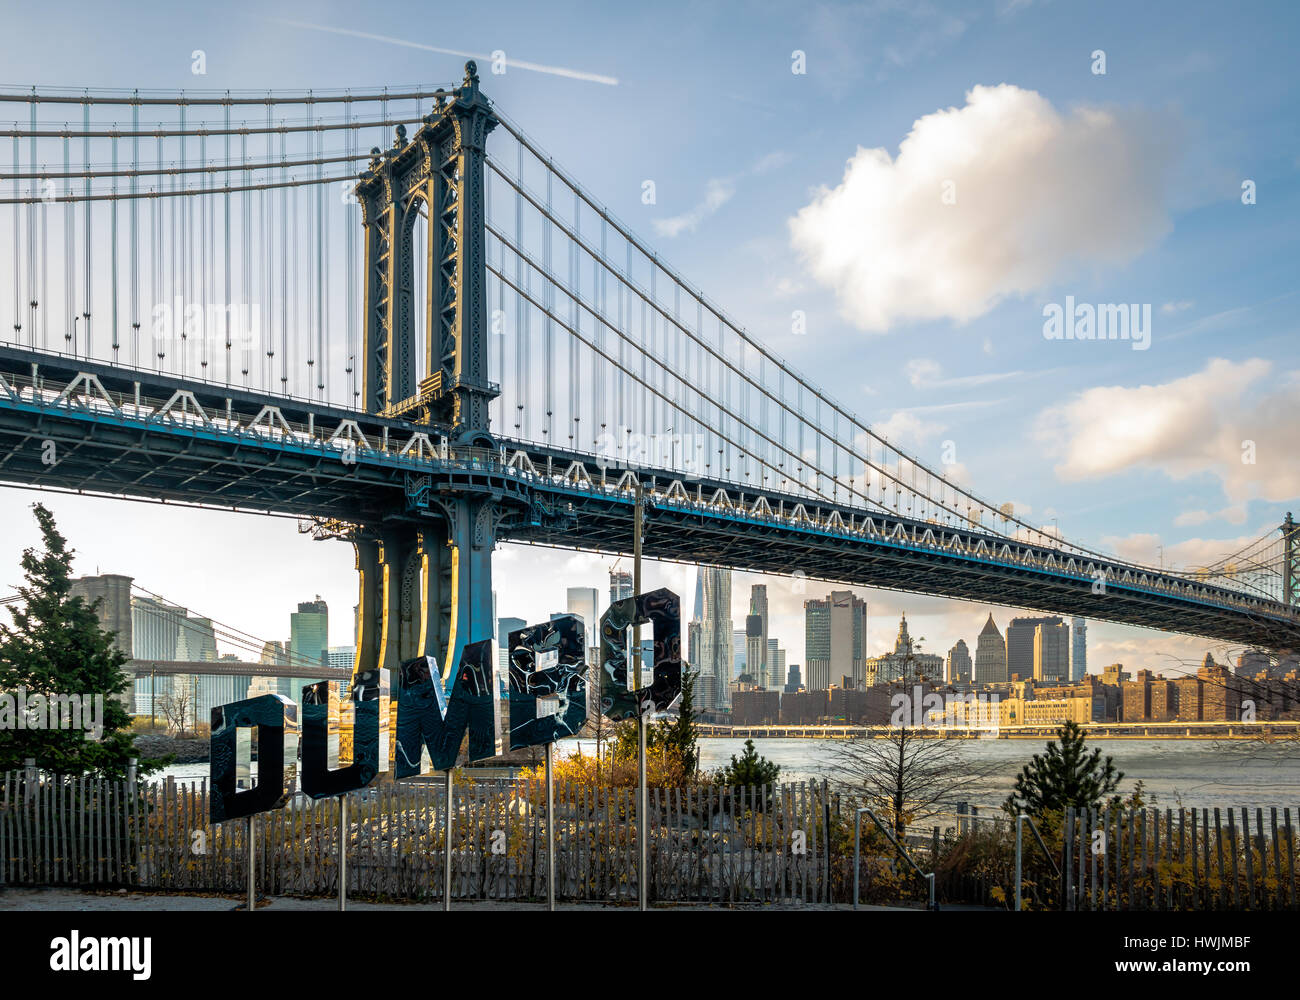 Manhattan Bridge and DUMBO sign - New York, USA Stock Photo